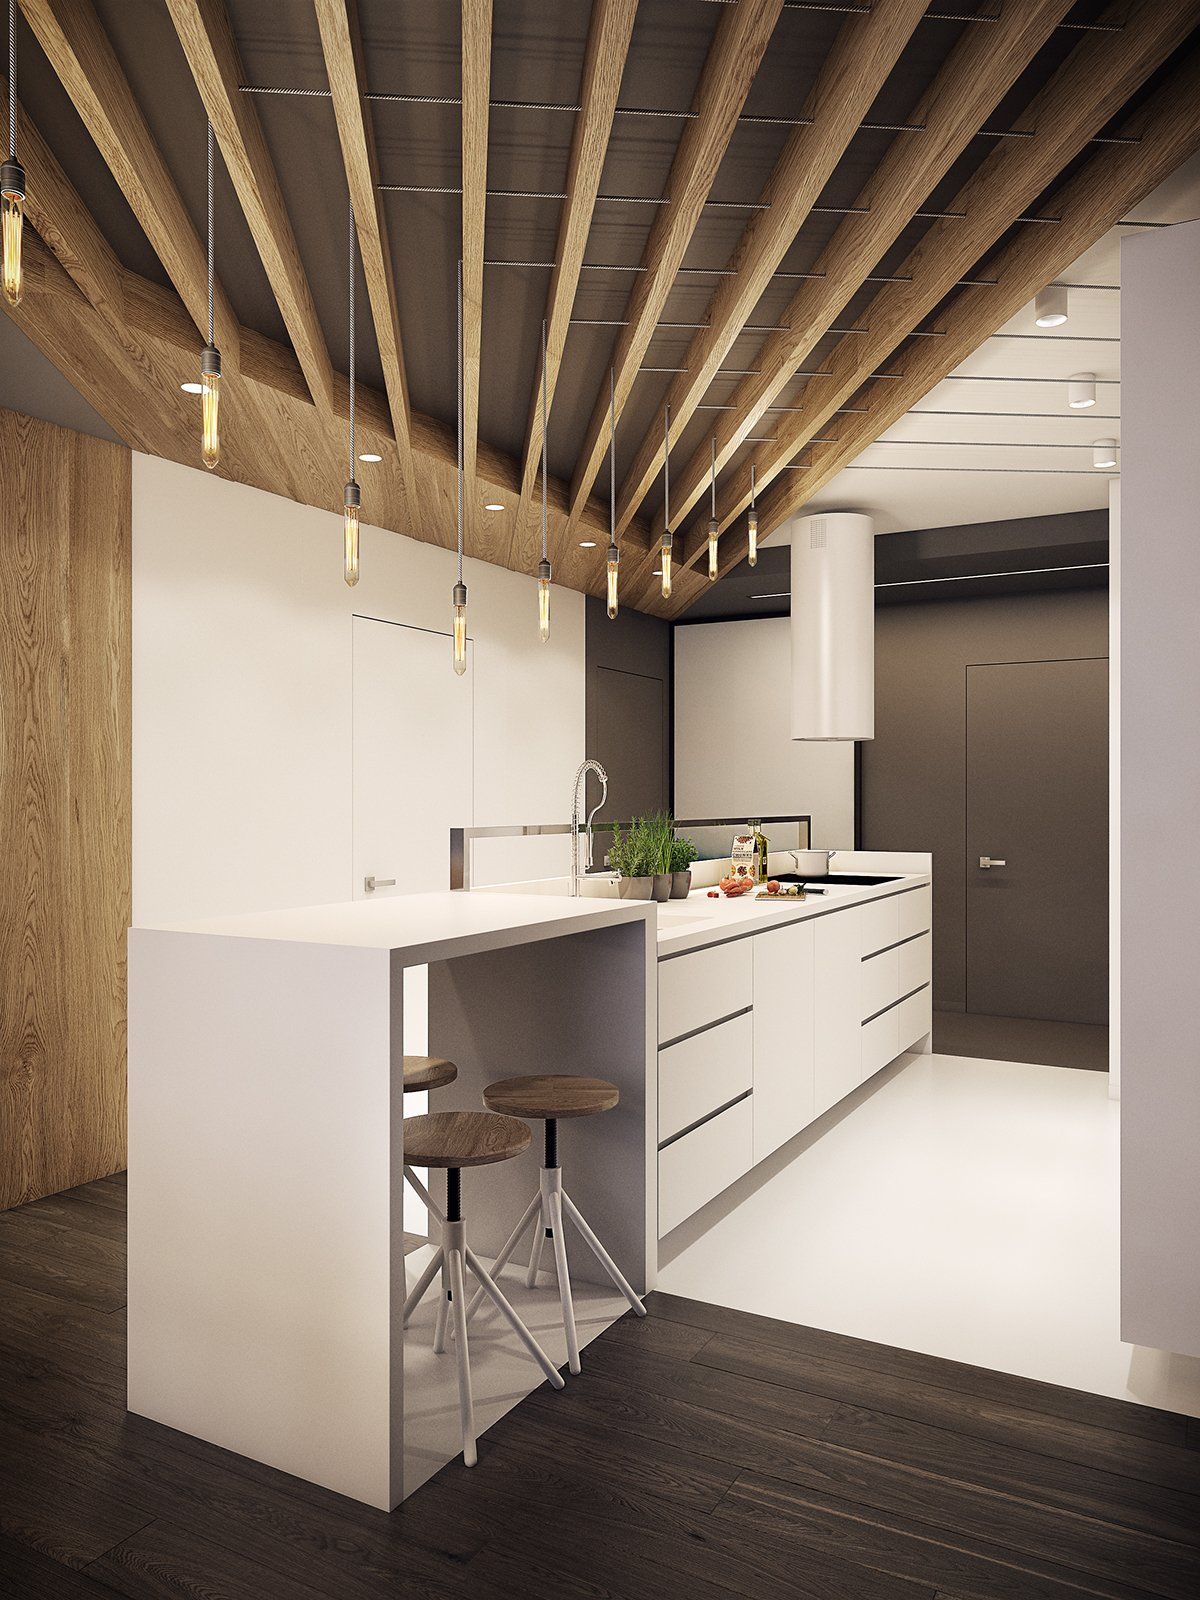 طراحی کابینت مدرن آشپزخانه02